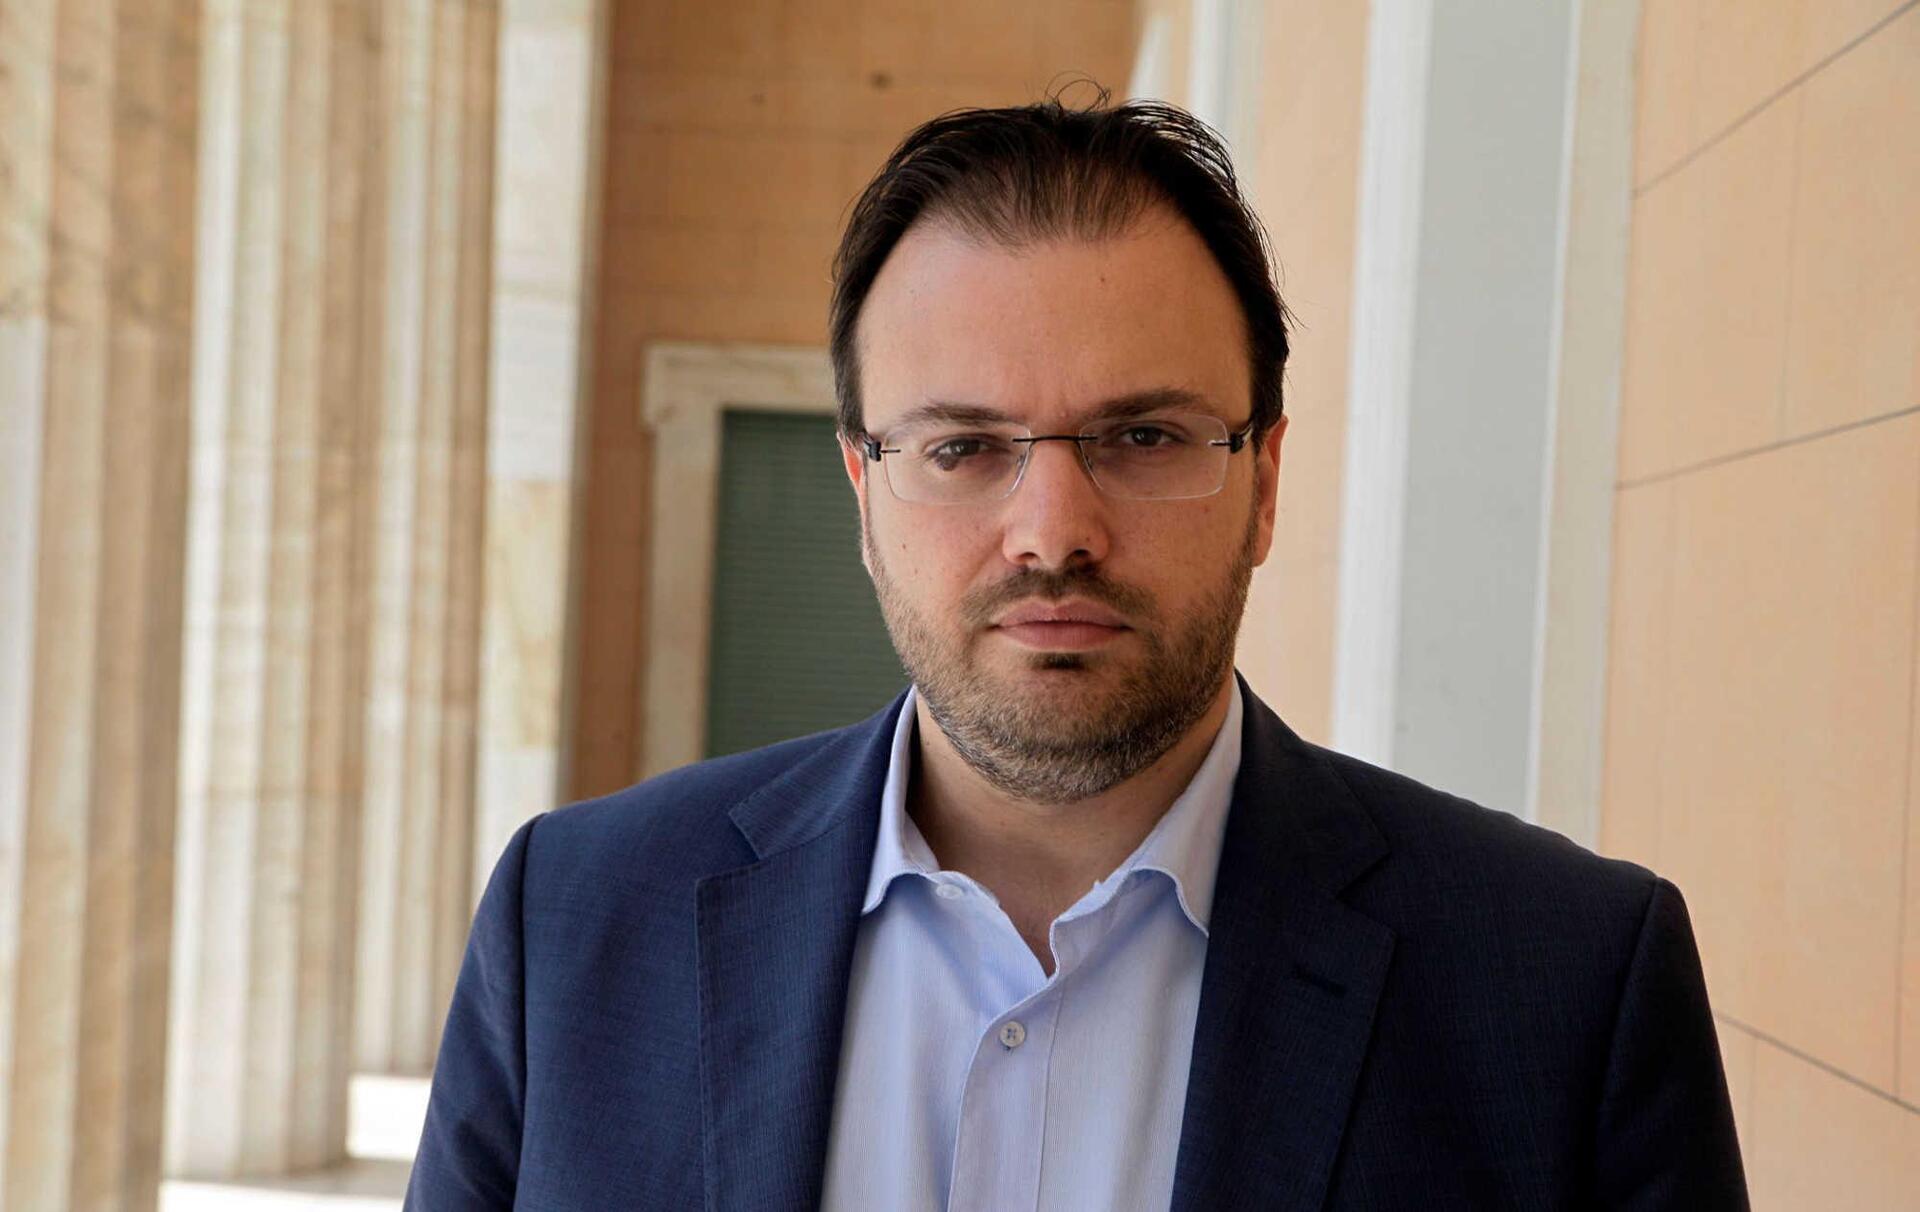 Θεοχαρόπουλος στον «Ε.Τ.»: Ανησυχώ για τον μετασχηματισμό του ΣΥΡΙΖΑ - Προοδευτική Συμμαχία